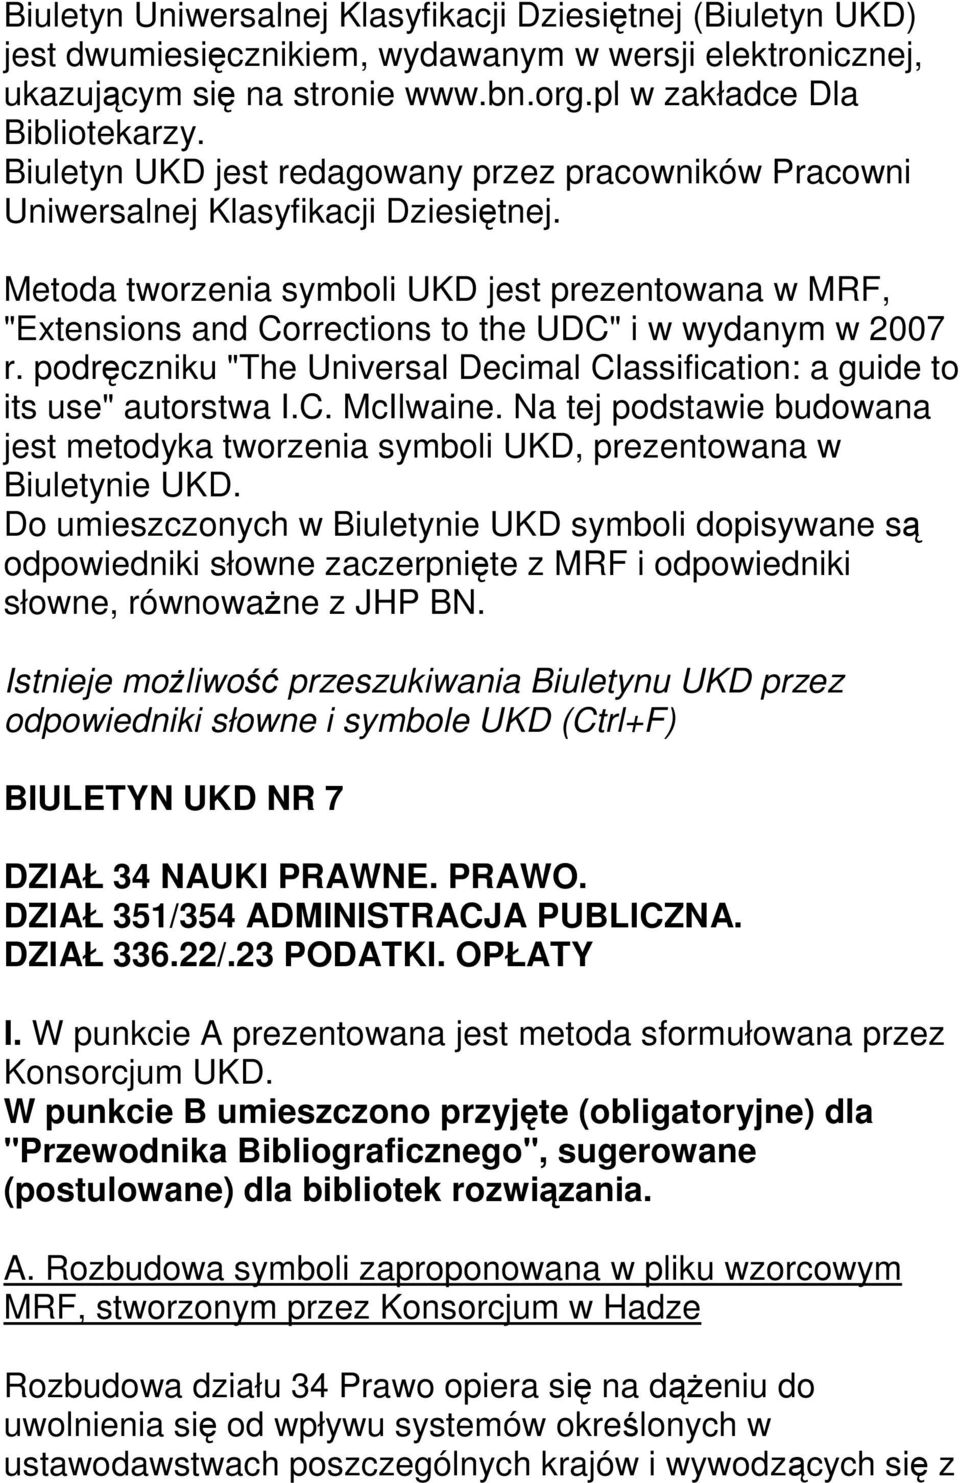 Metoda tworzenia symboli UKD jest prezentowana w MRF, "Extensions and Corrections to the UDC" i w wydanym w 2007 r. podręczniku "The Universal Decimal Classification: a guide to its use" autorstwa I.